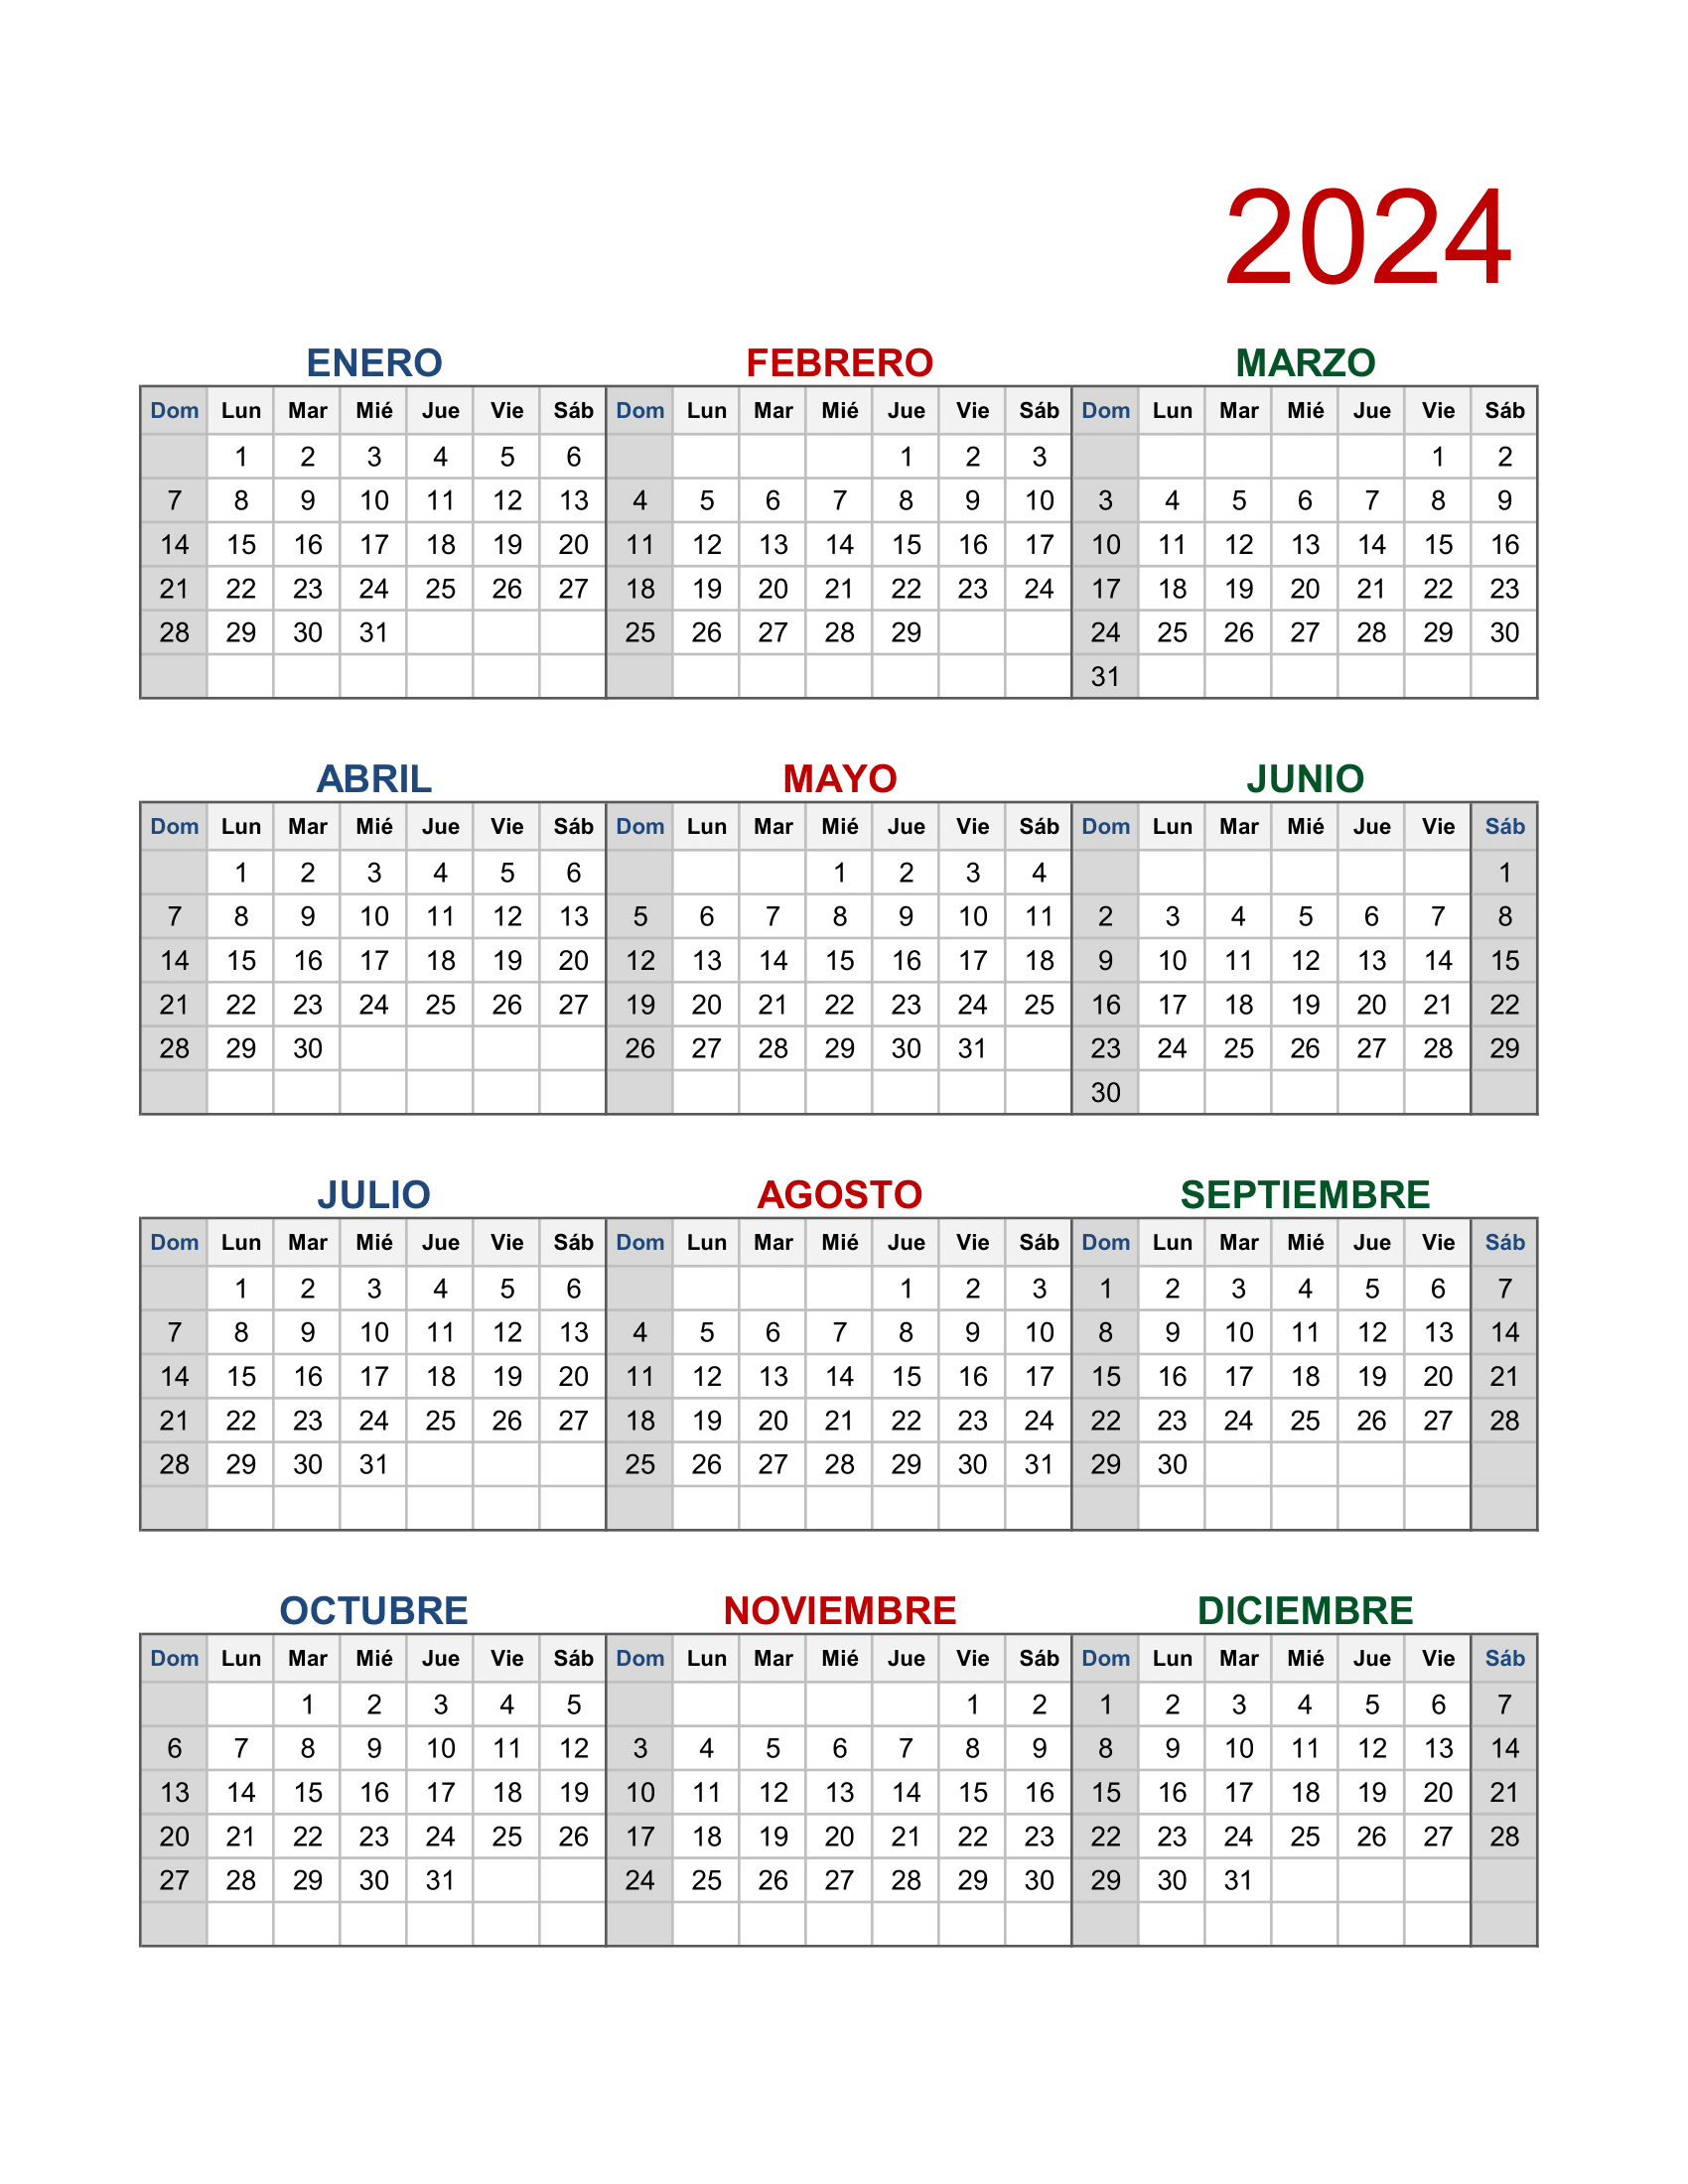 La imagen muestra un calendario 2024 para imprimir en formato de imagen